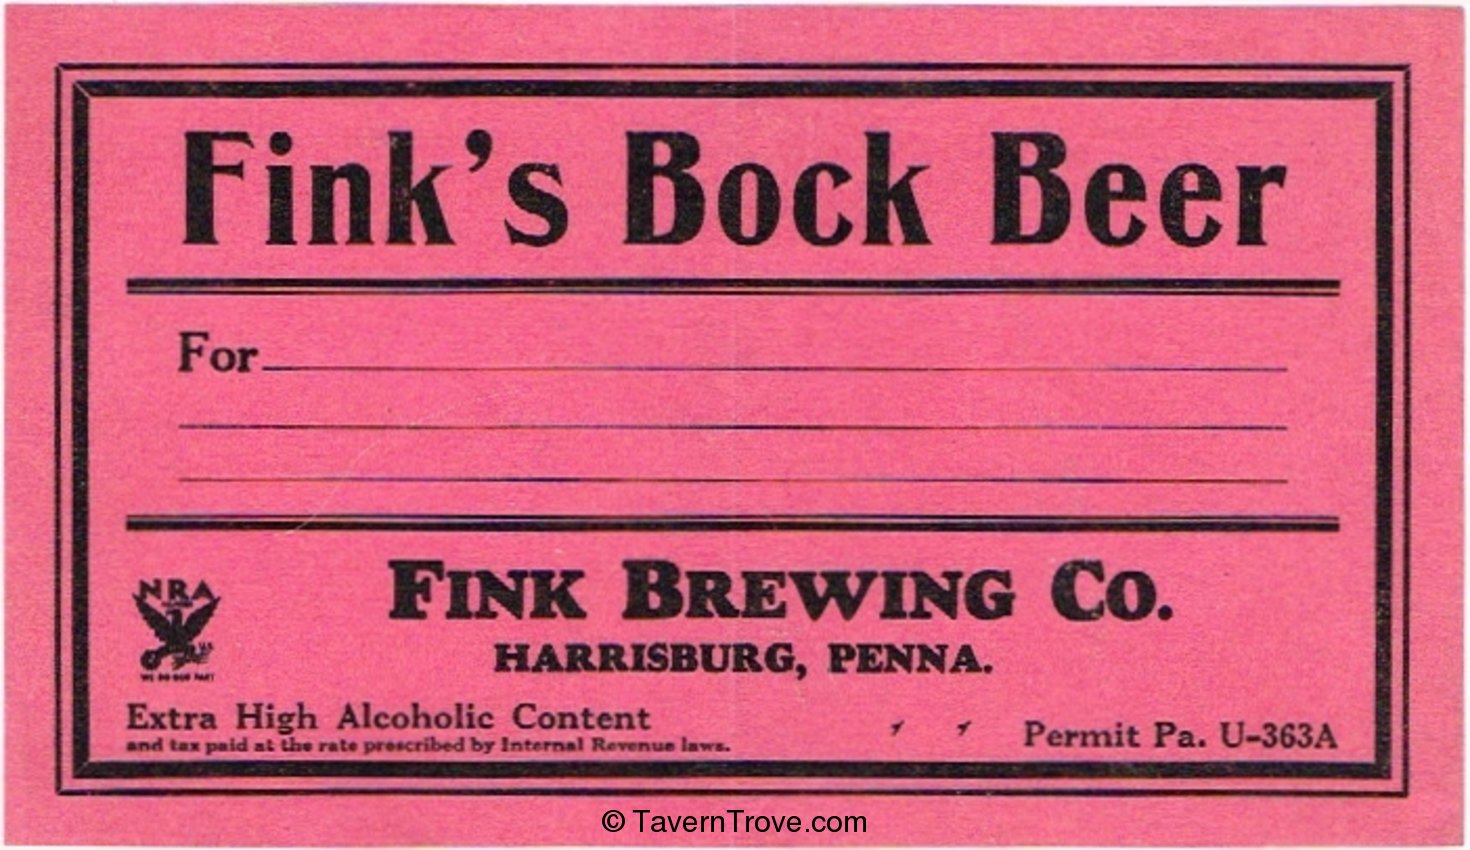 Fink's Bock Beer